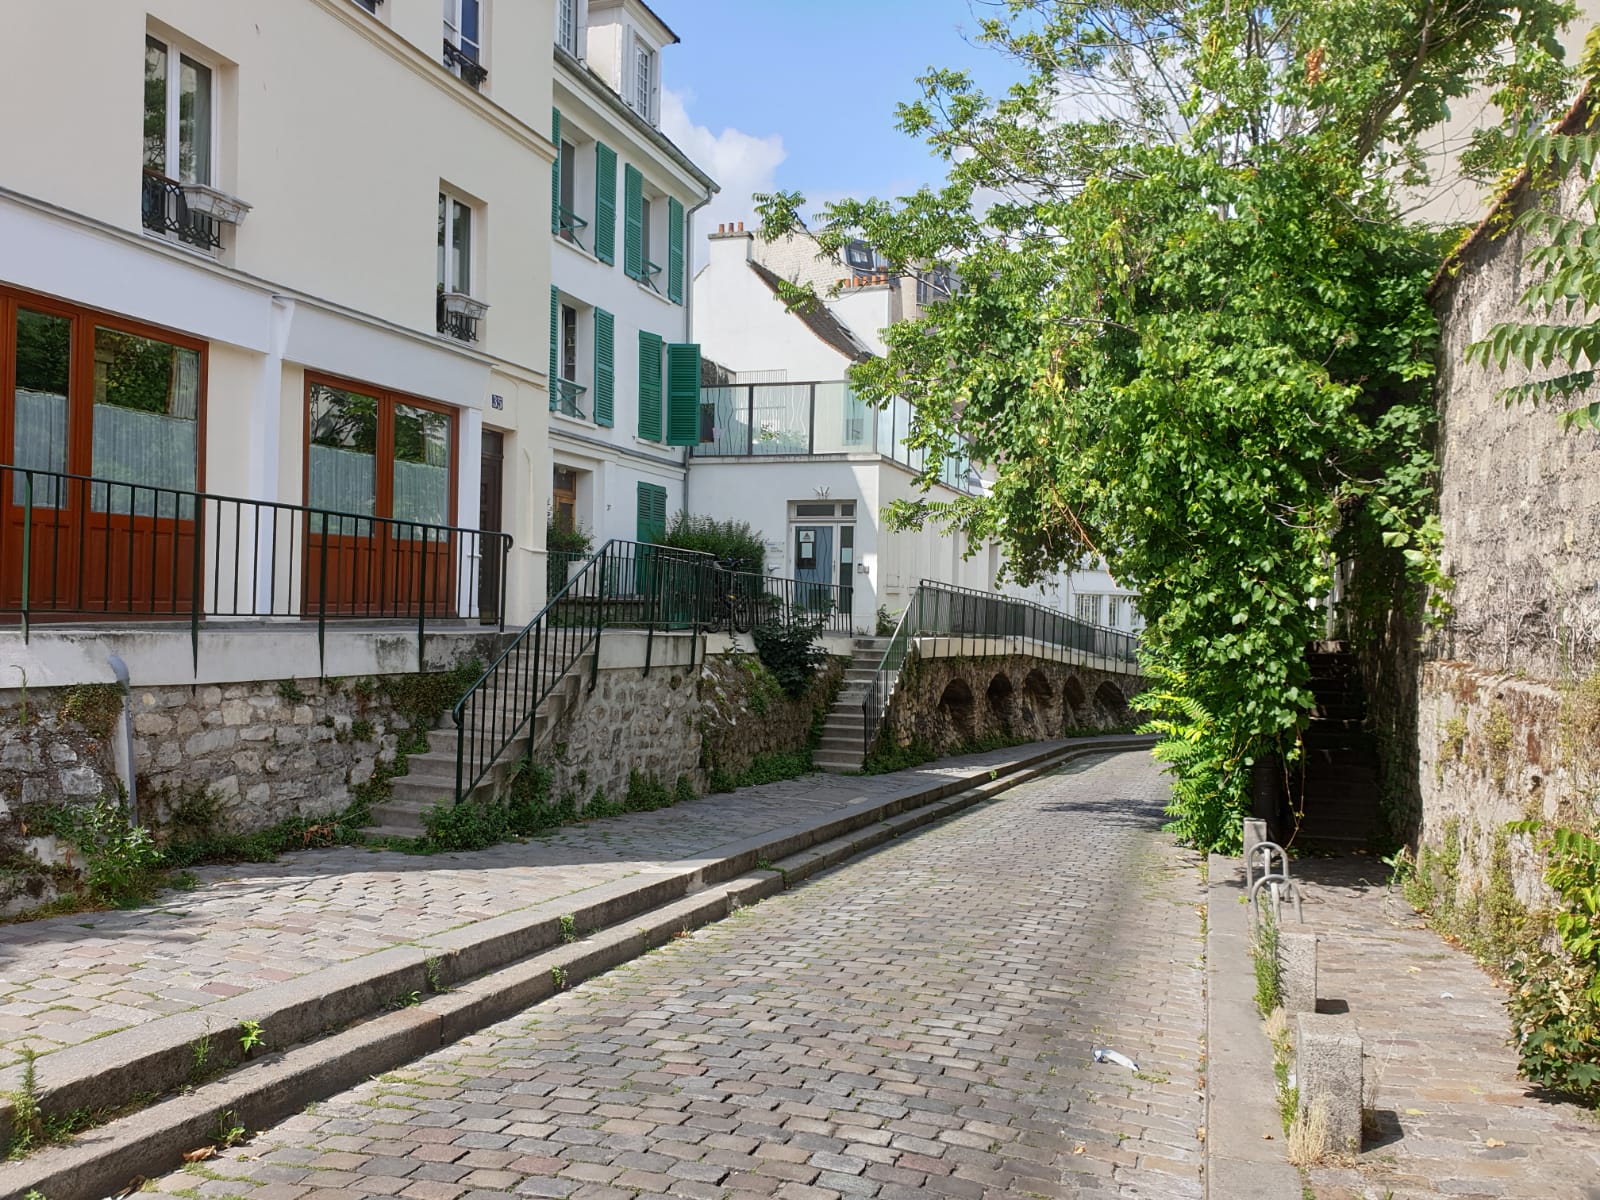 My Montmartre Tours - Cobblestone streets